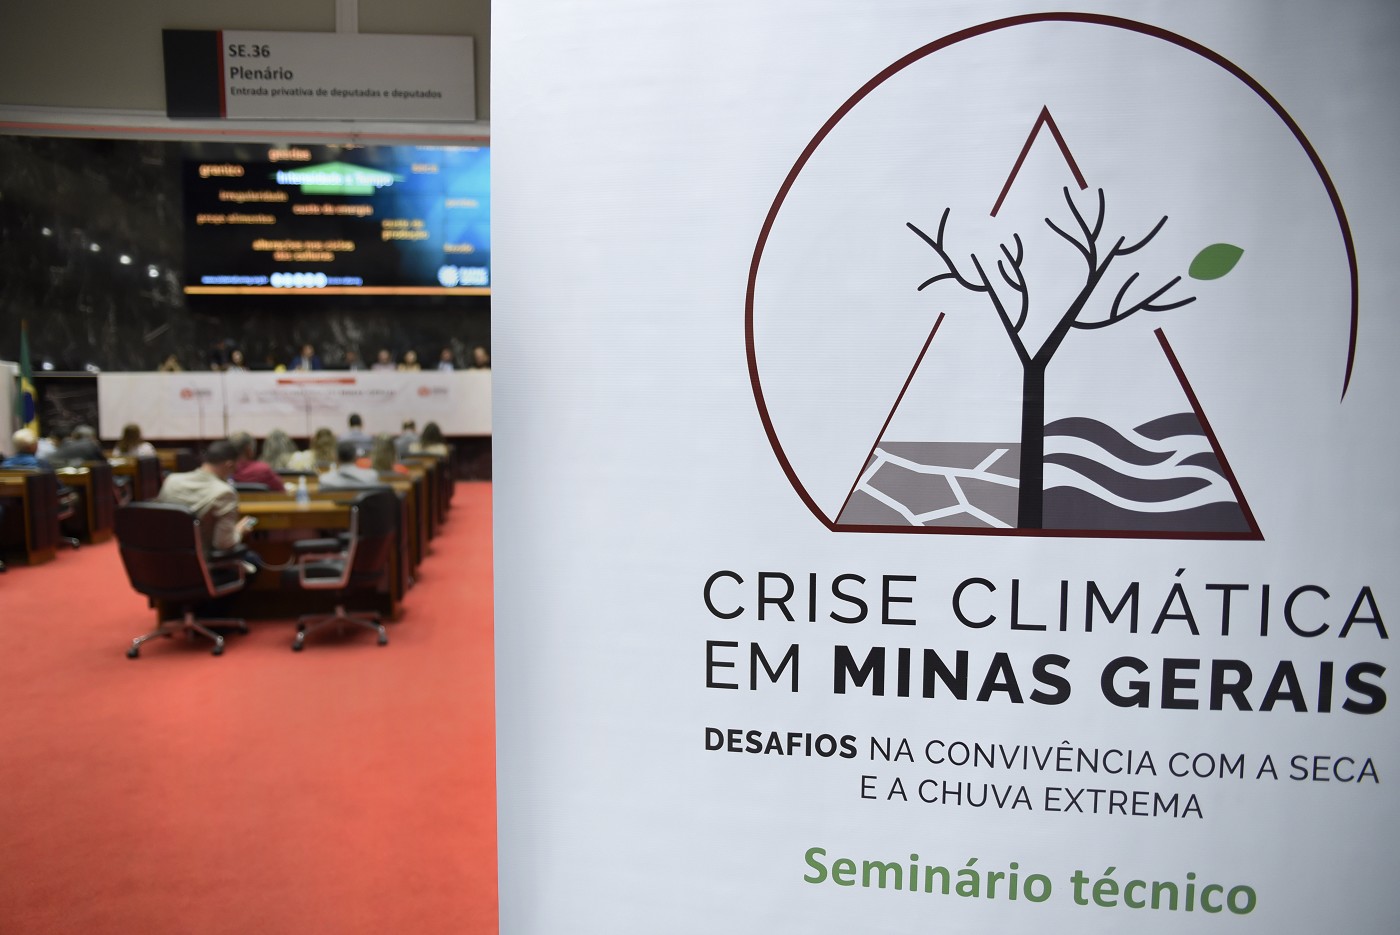 Seminário Técnico Crise Climática em Minas Gerais: Desafios na convivência com a seca e a chuva extrema"